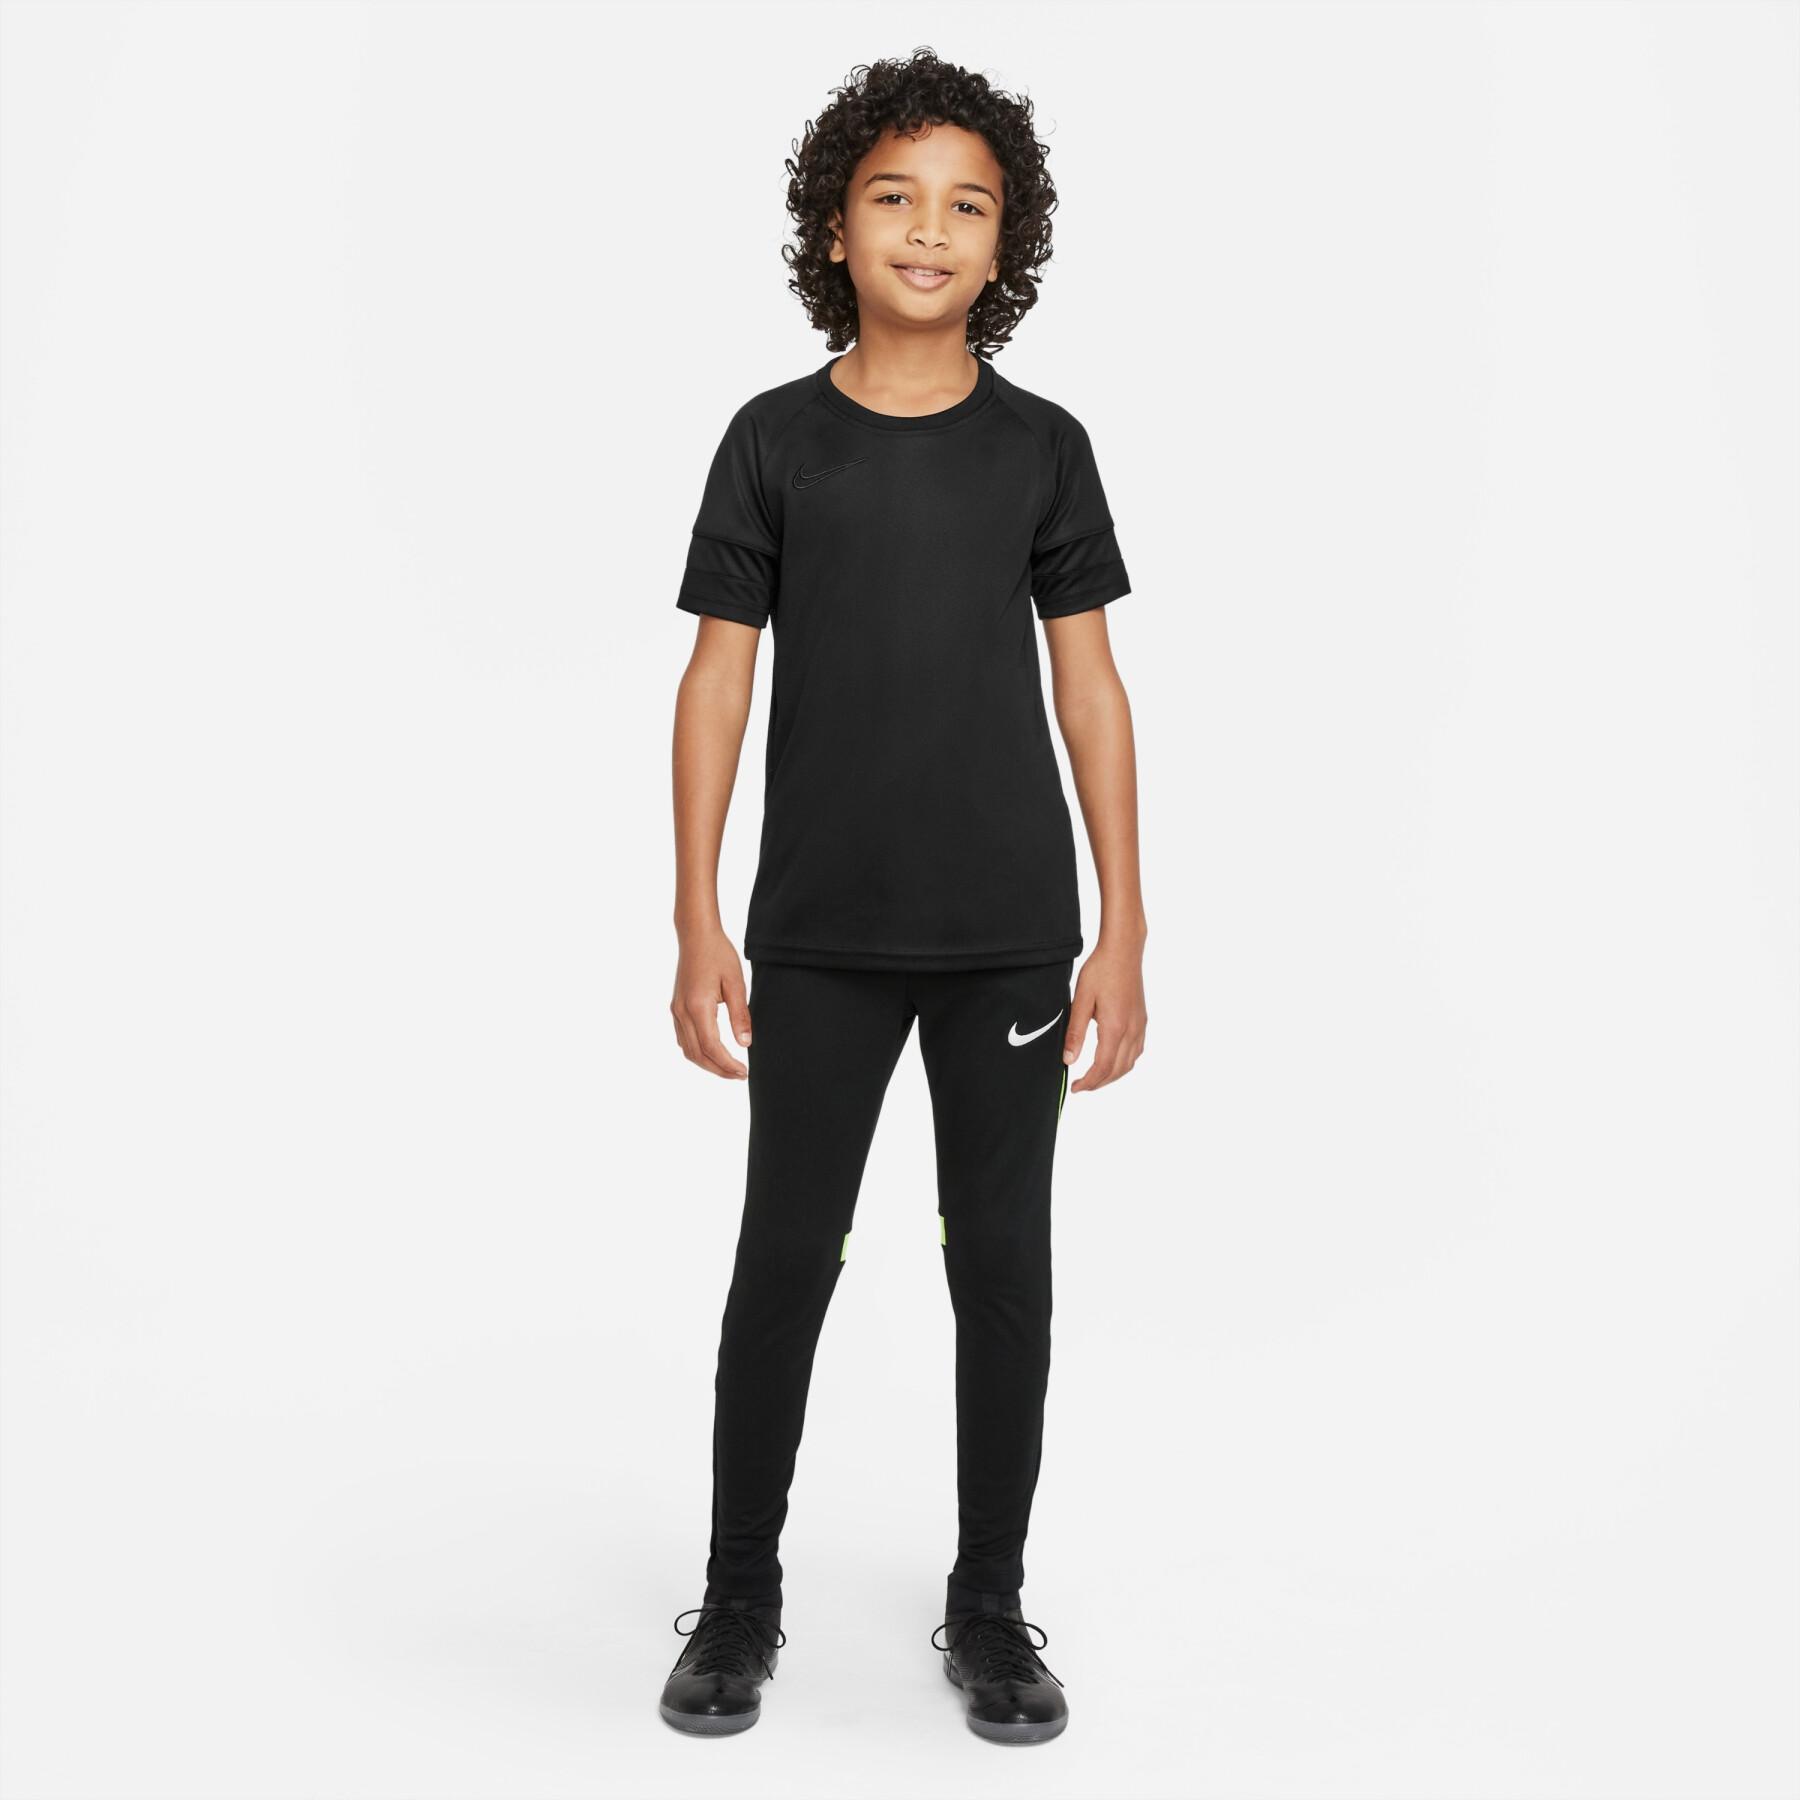 Children's Nike Dri-FIT Academy Pro Sweatpants suit